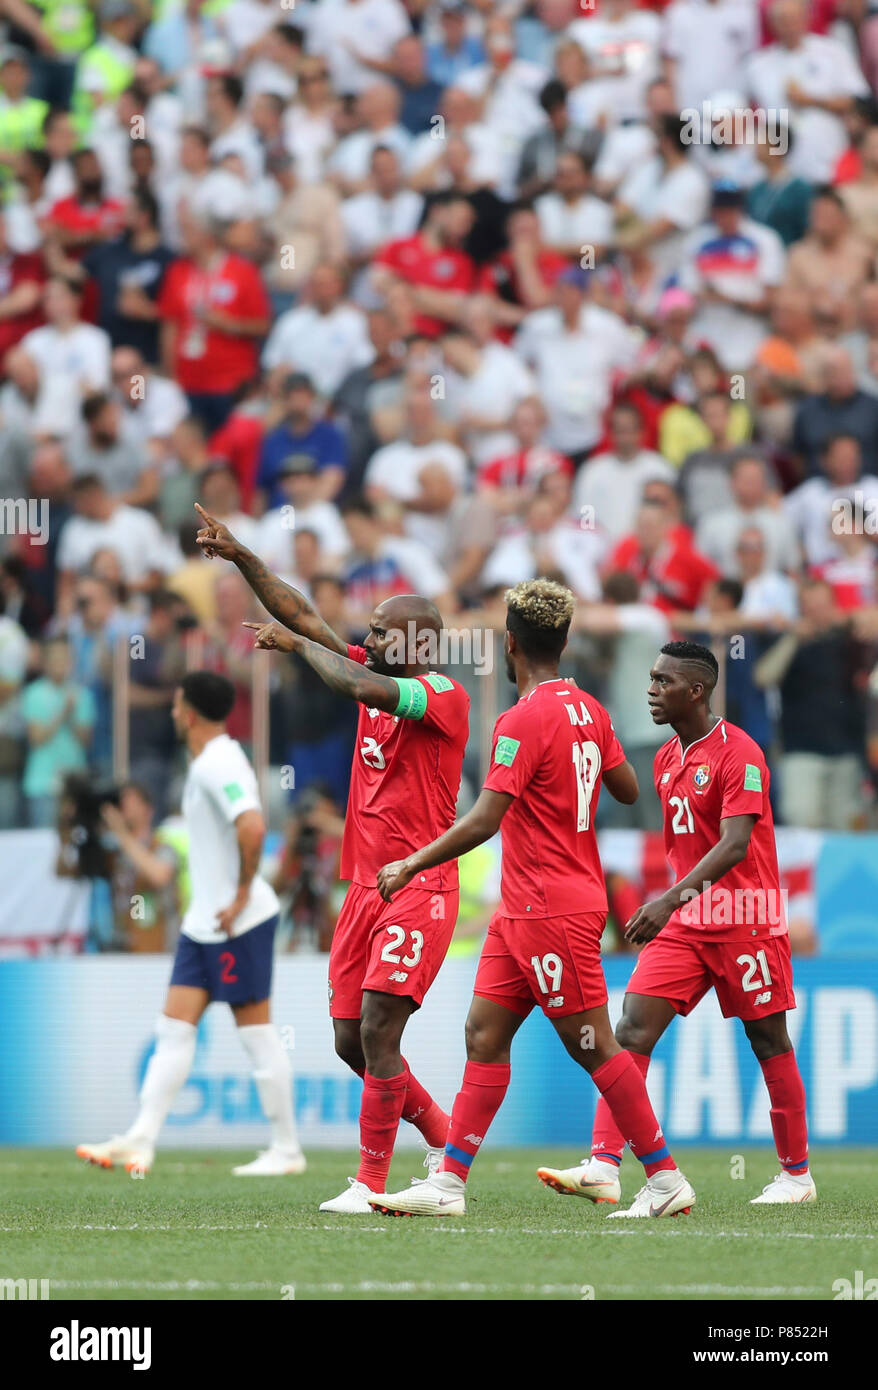 Felipe Baloy do Panama faz gol contra a Inglaterra realizada neste domingo, 24, no Estádio Nizhny Novgorod, na Rússia, válida pela 2ª rodada do Grupo G da Copa do Mundo 2018. Stock Photo